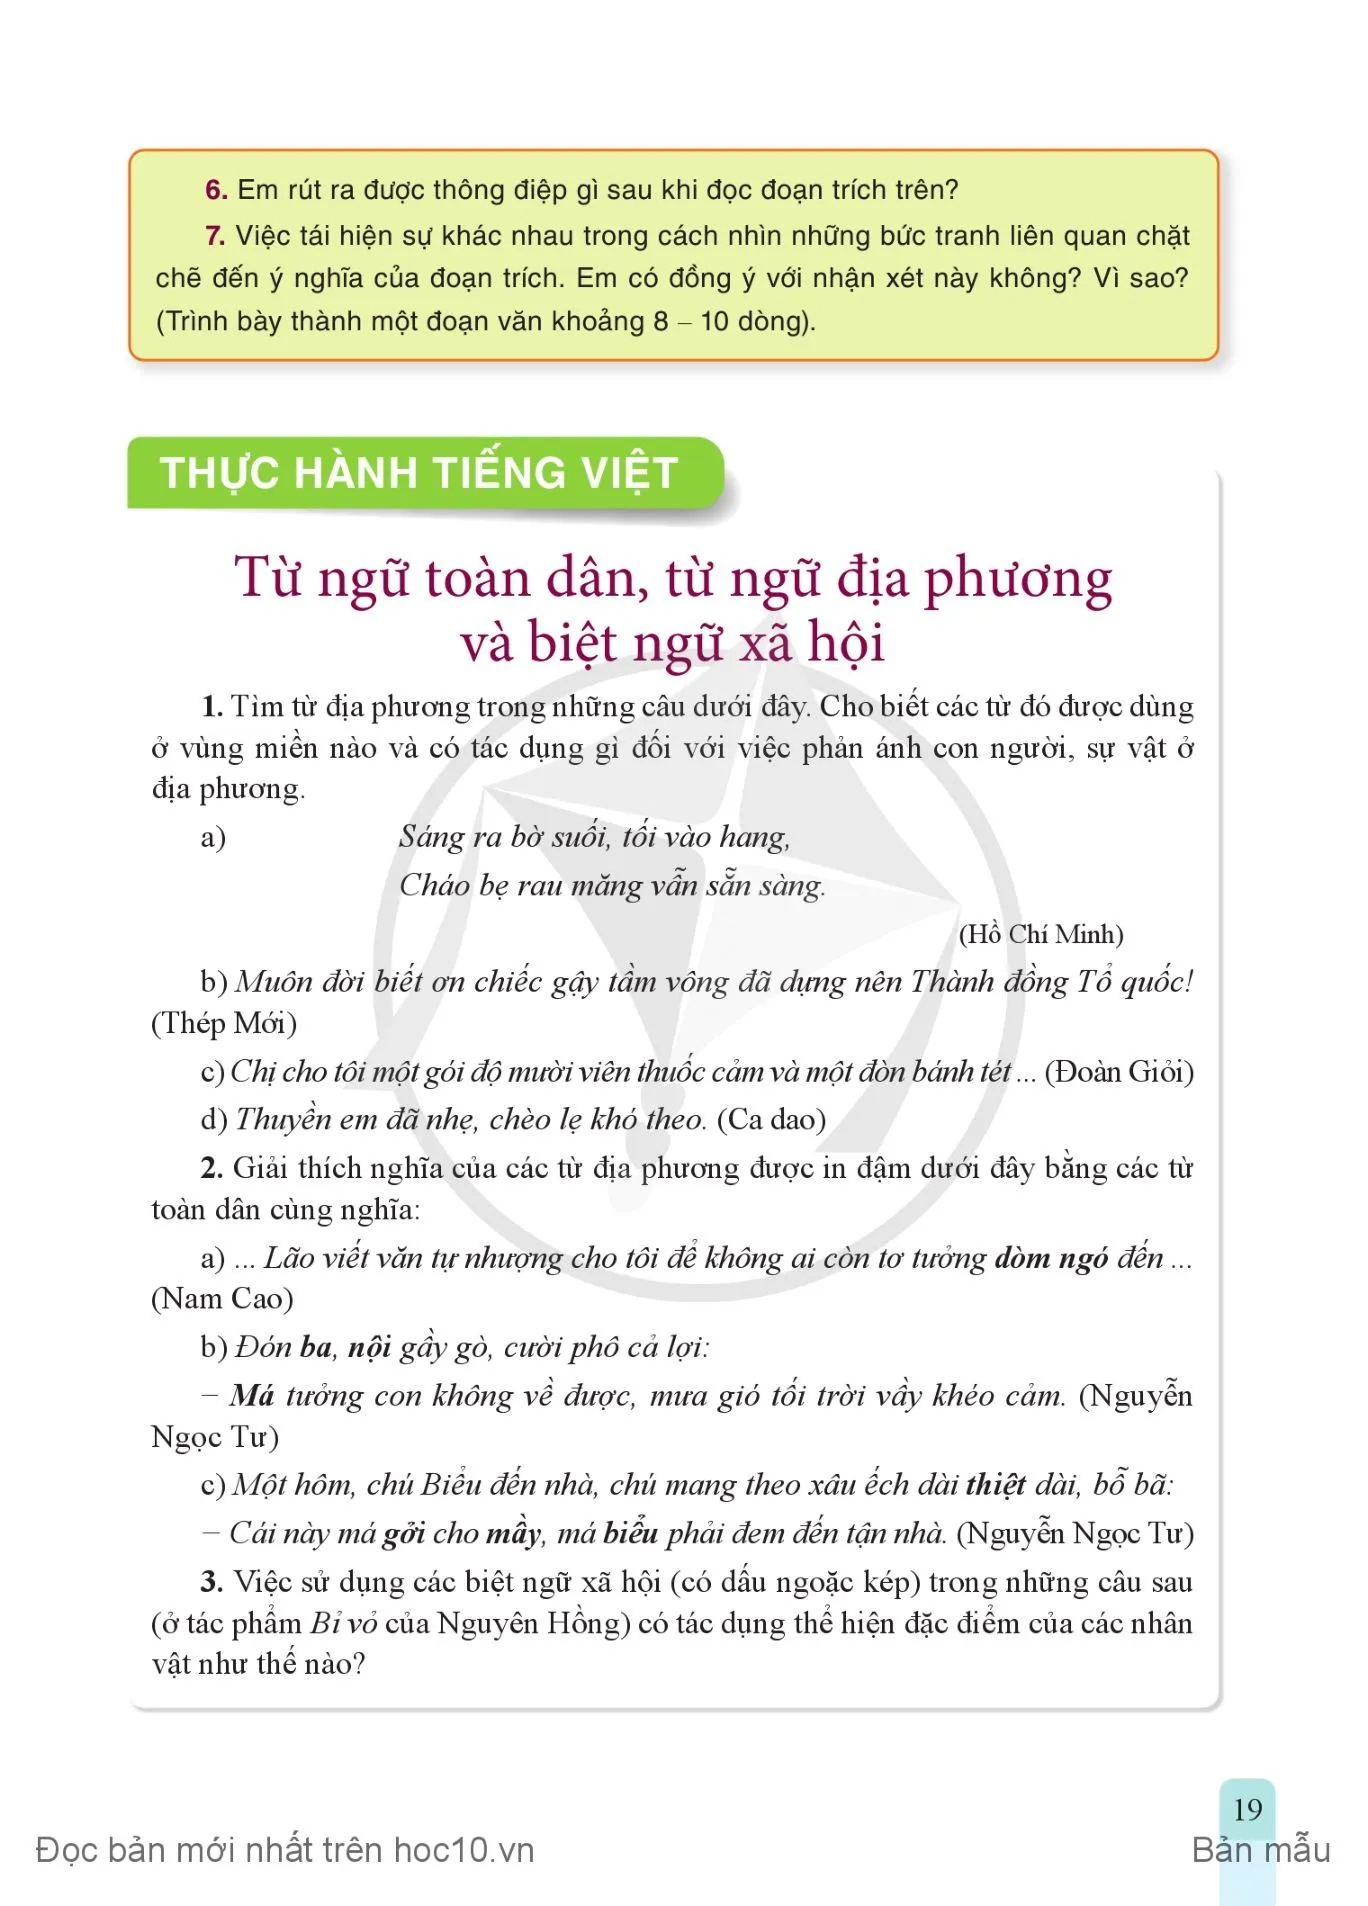 • Thực hành tiếng Việt: Từ ngữ toàn dân, từ ngữ địa phương và biệt ngữ xã hội